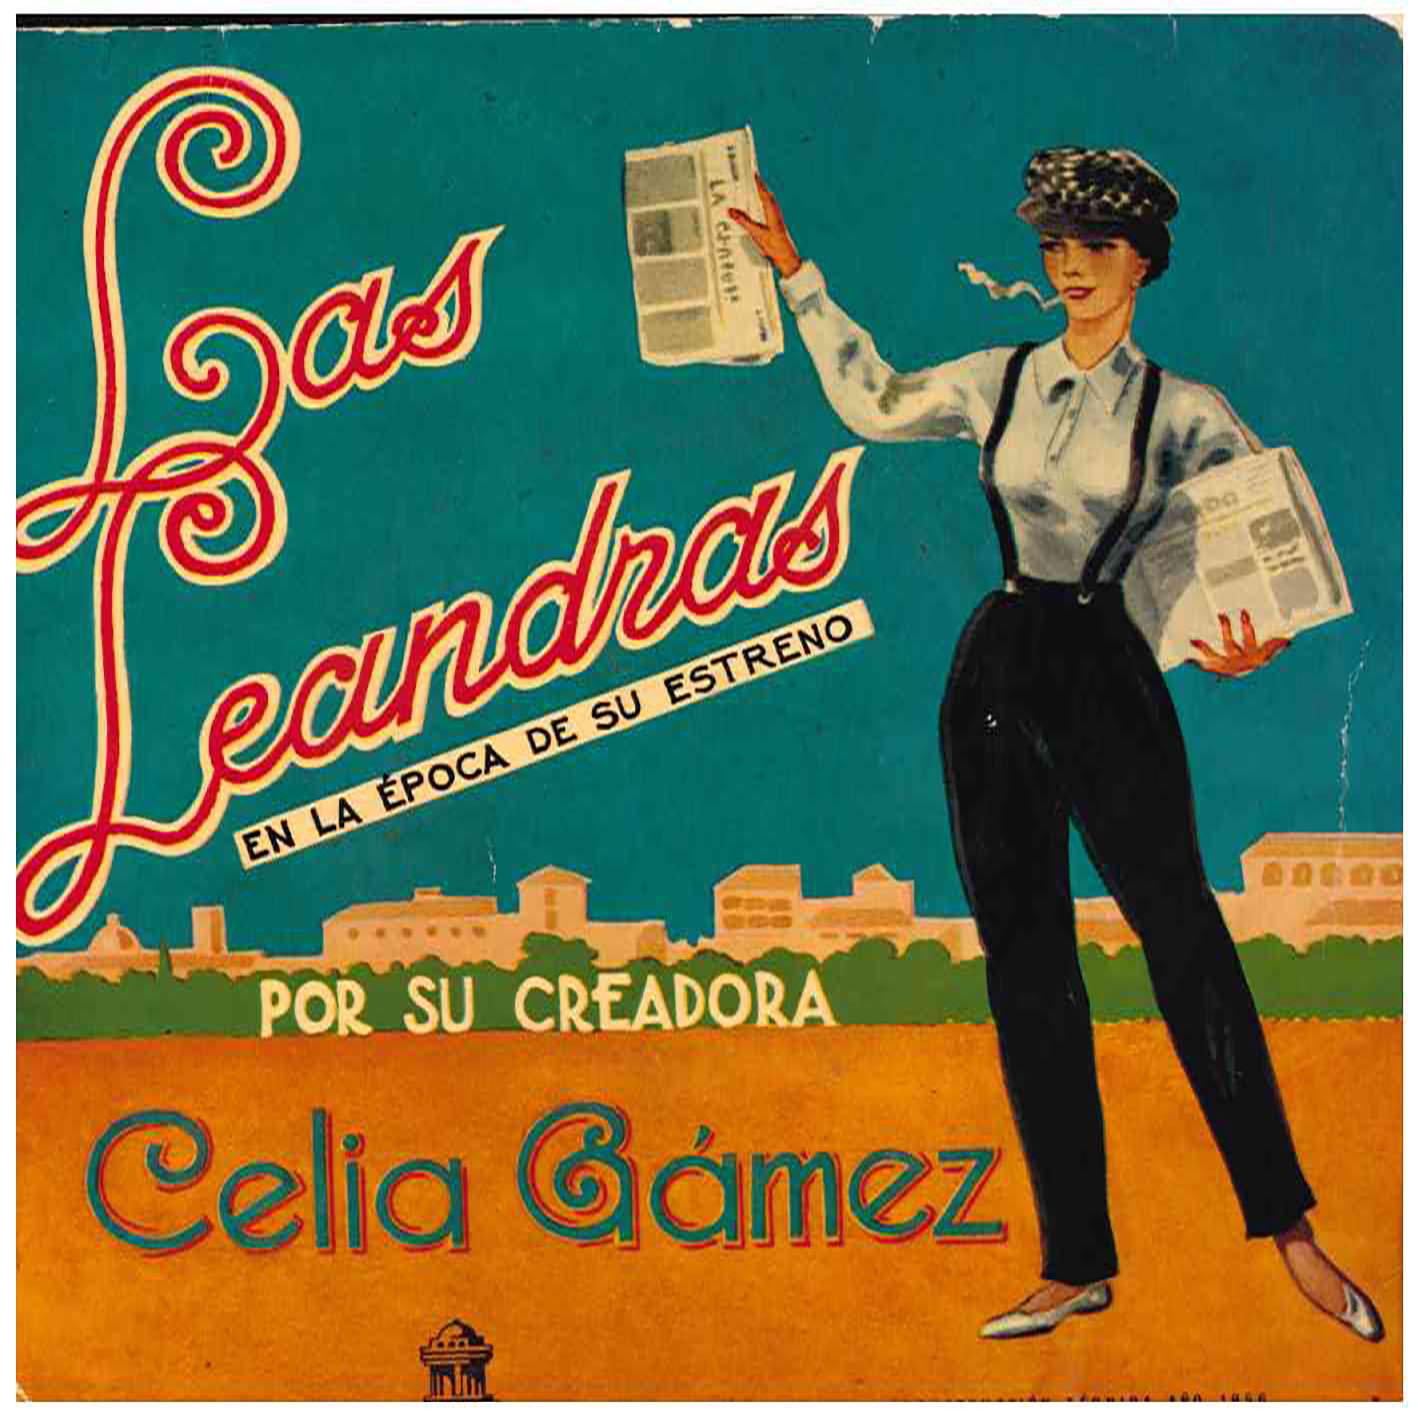 Celia Gámez – Las Leandras En La Época De Su Estreno